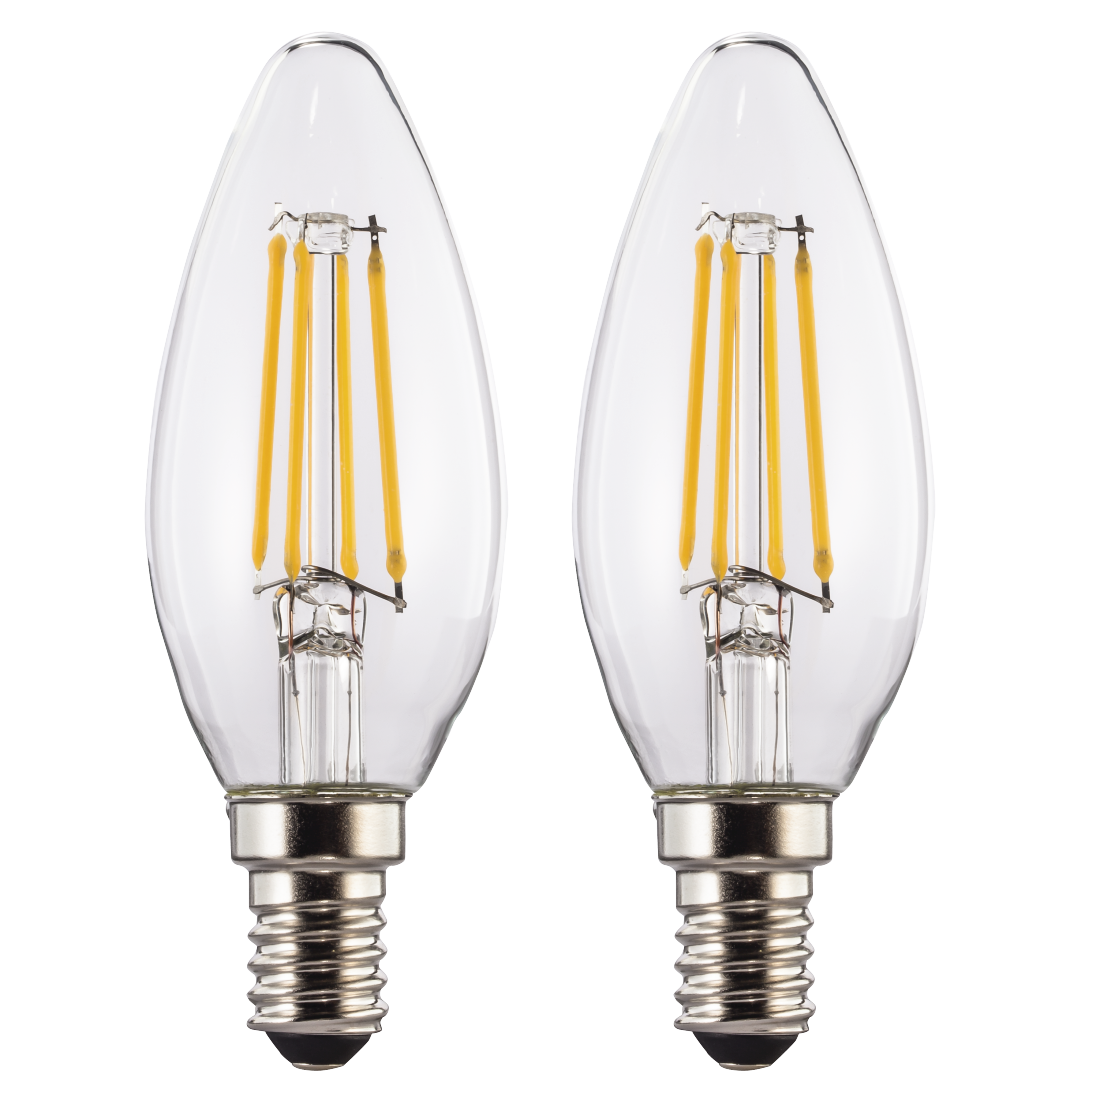 abx High-Res Image - Xavax, Ampoule filament LED, E14, 470lm rempl. 40W, amp. bgie, blc chd, 2 p.